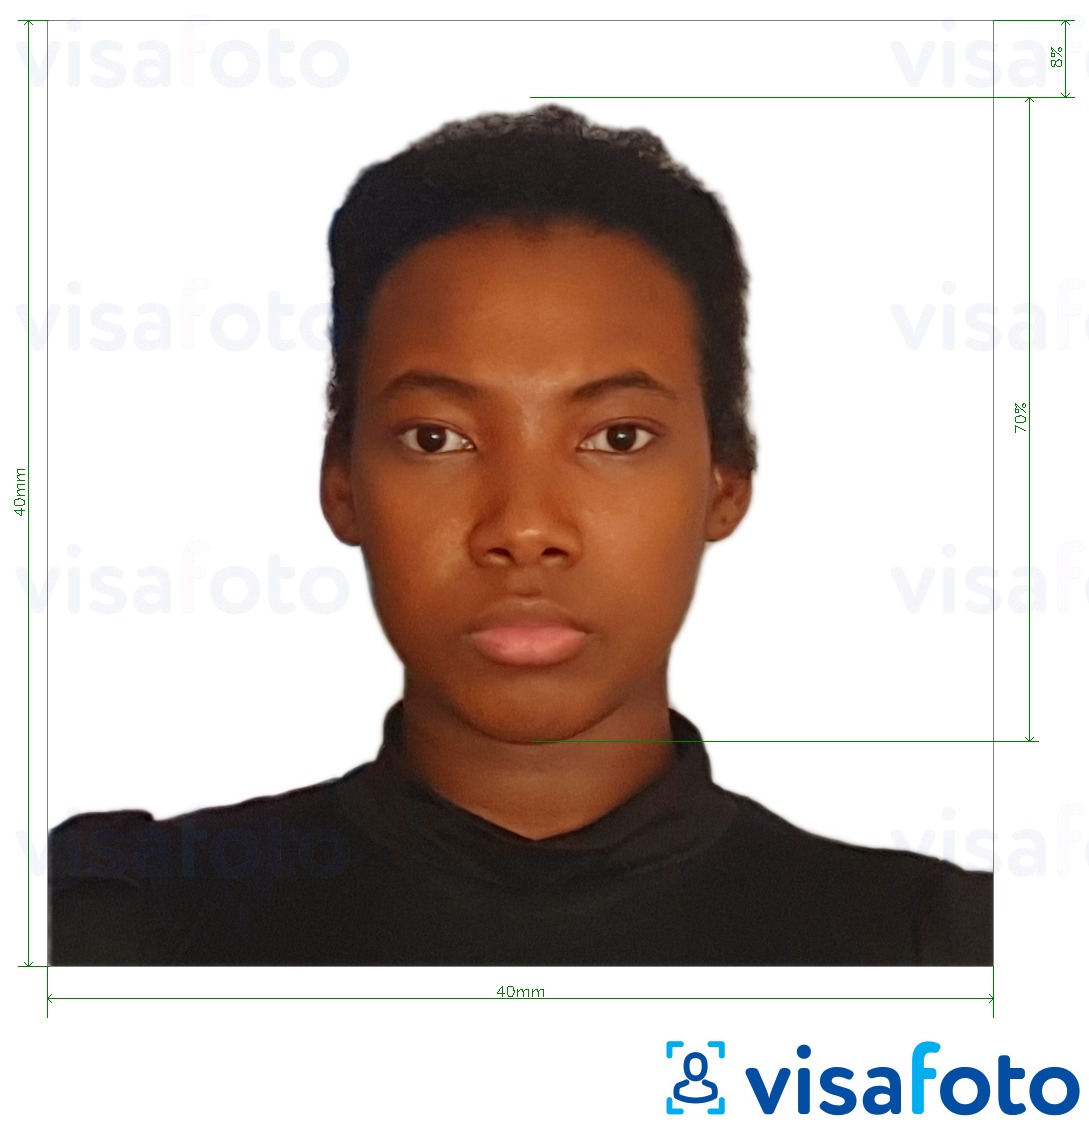 Eksempel på billede for Madagaskar visum 40x40 mm med præcis størrelsesspecifikation.